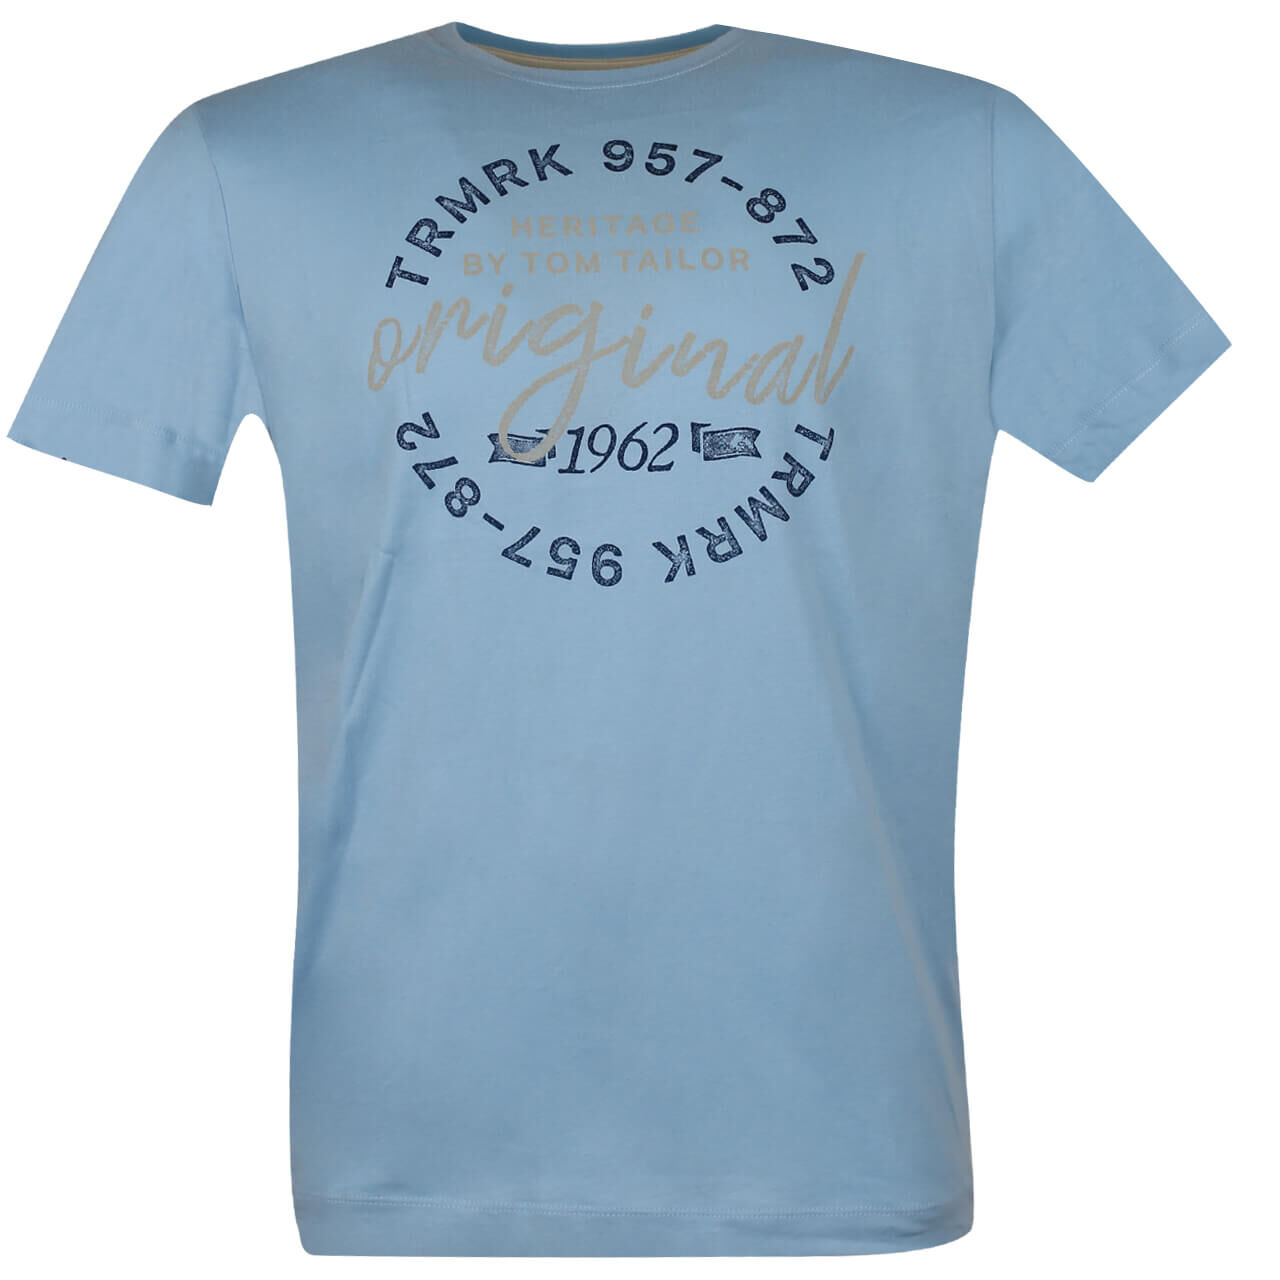 Tom Tailor T-Shirt für Herren in Himmelblau mit Print, FarbNr.: 26298